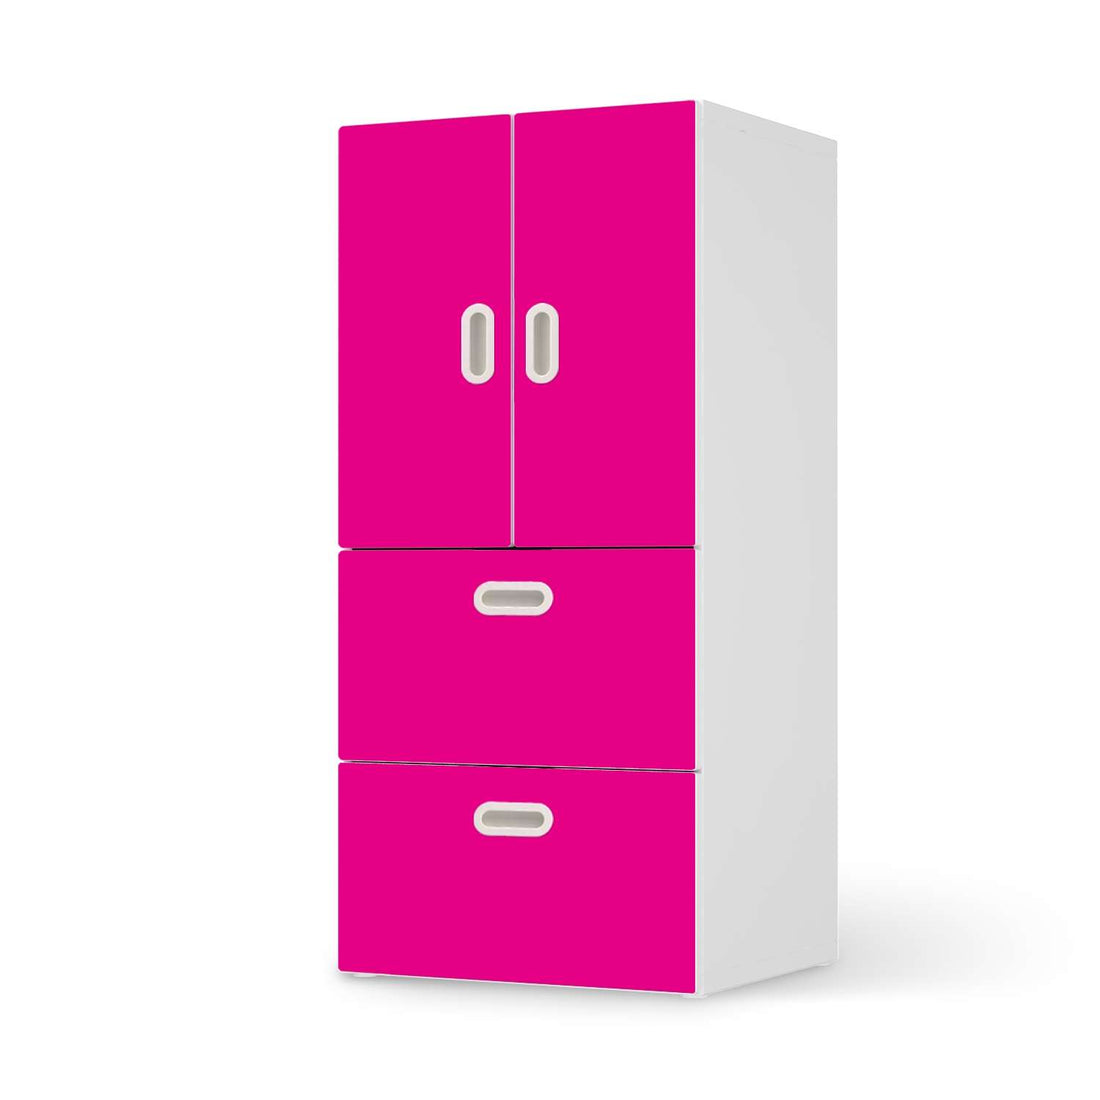 Möbelfolie Pink Dark - IKEA Stuva / Fritids kombiniert - 2 Schubladen und 2 kleine Türen  - weiss